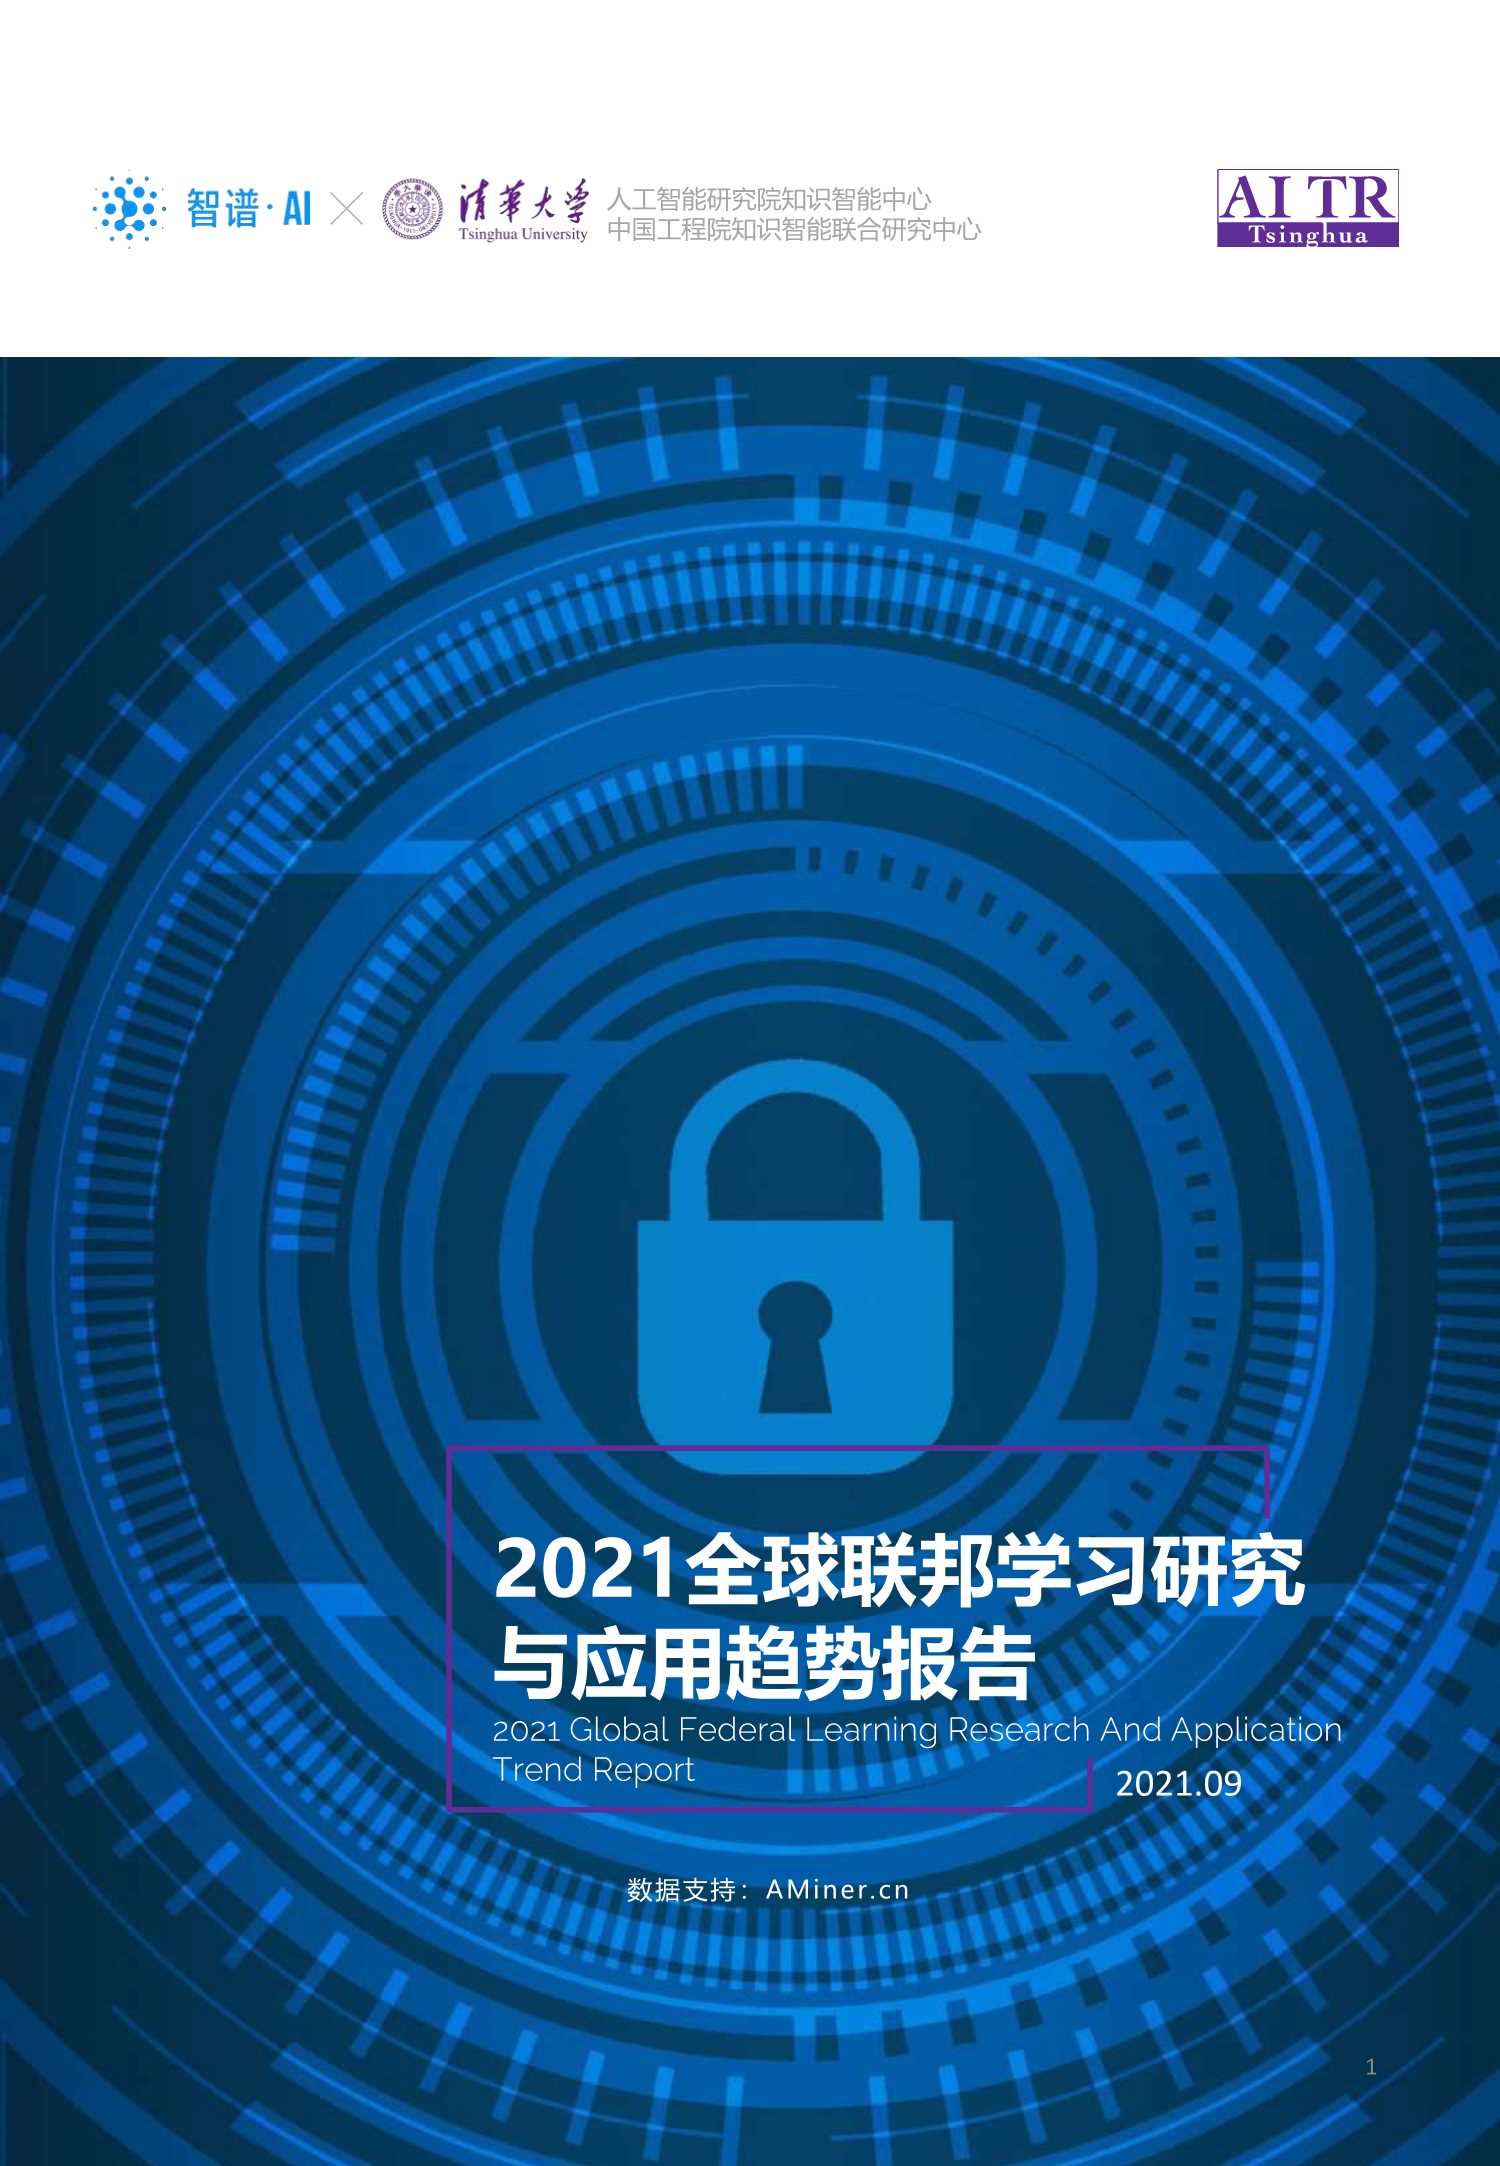 智谱AI&清华大学-2021全球联邦学习研究与应用趋势报告-2021.09-104页